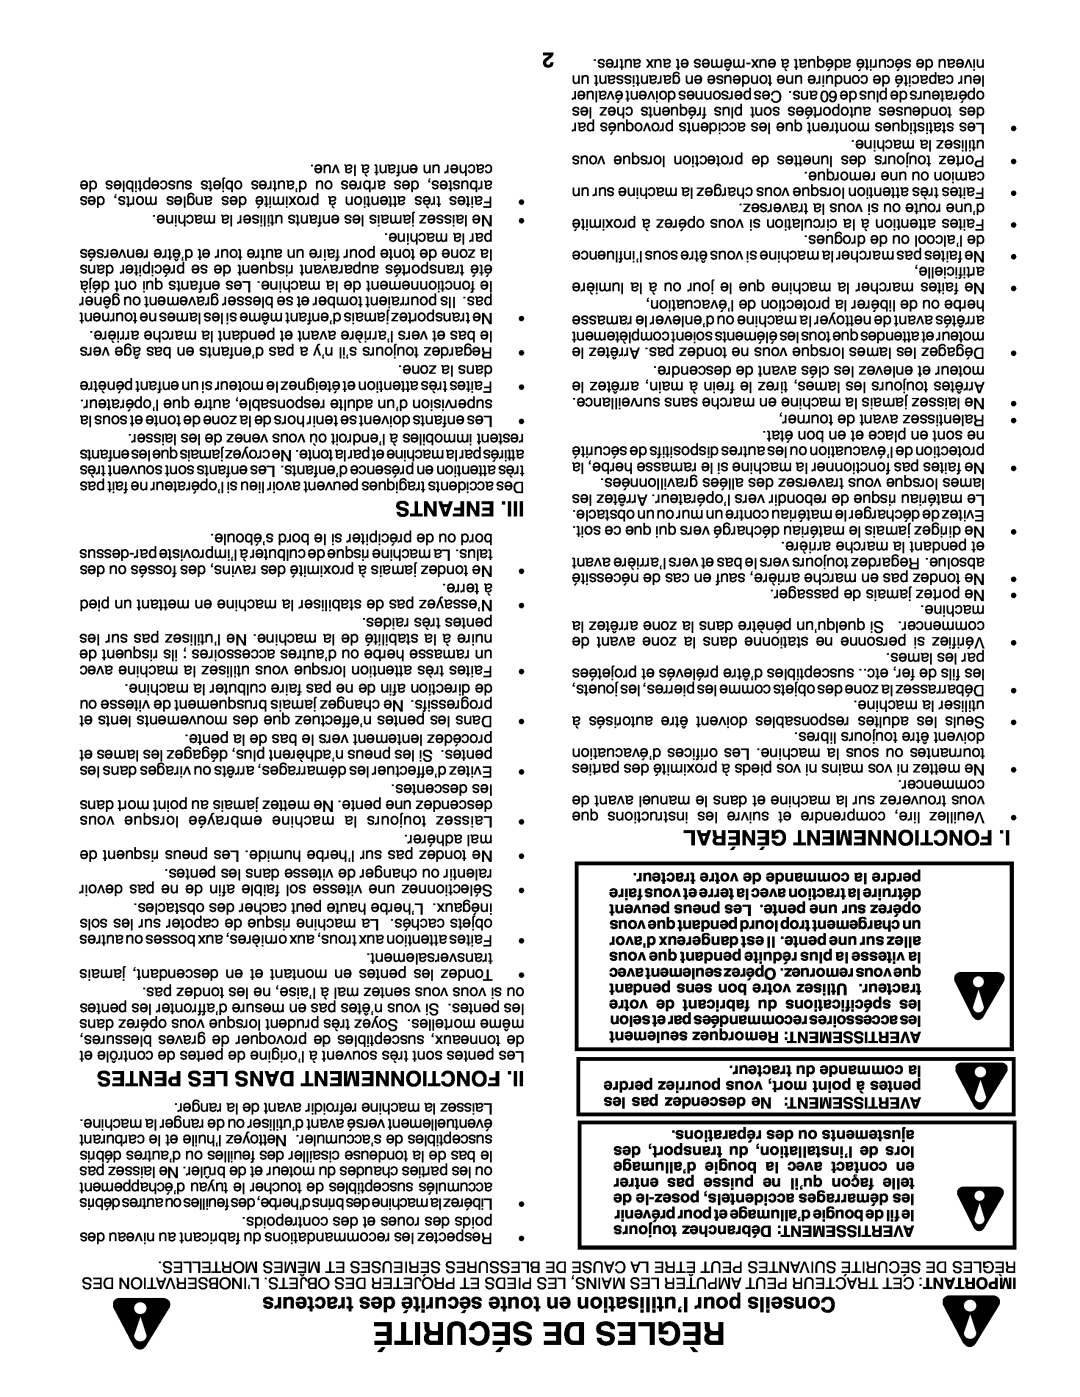 Poulan 960 72 00-13 owner manual Enfants, Pentes Les Dans Fonctionnement, Général Fonctionnement, Sécurité De Règles 